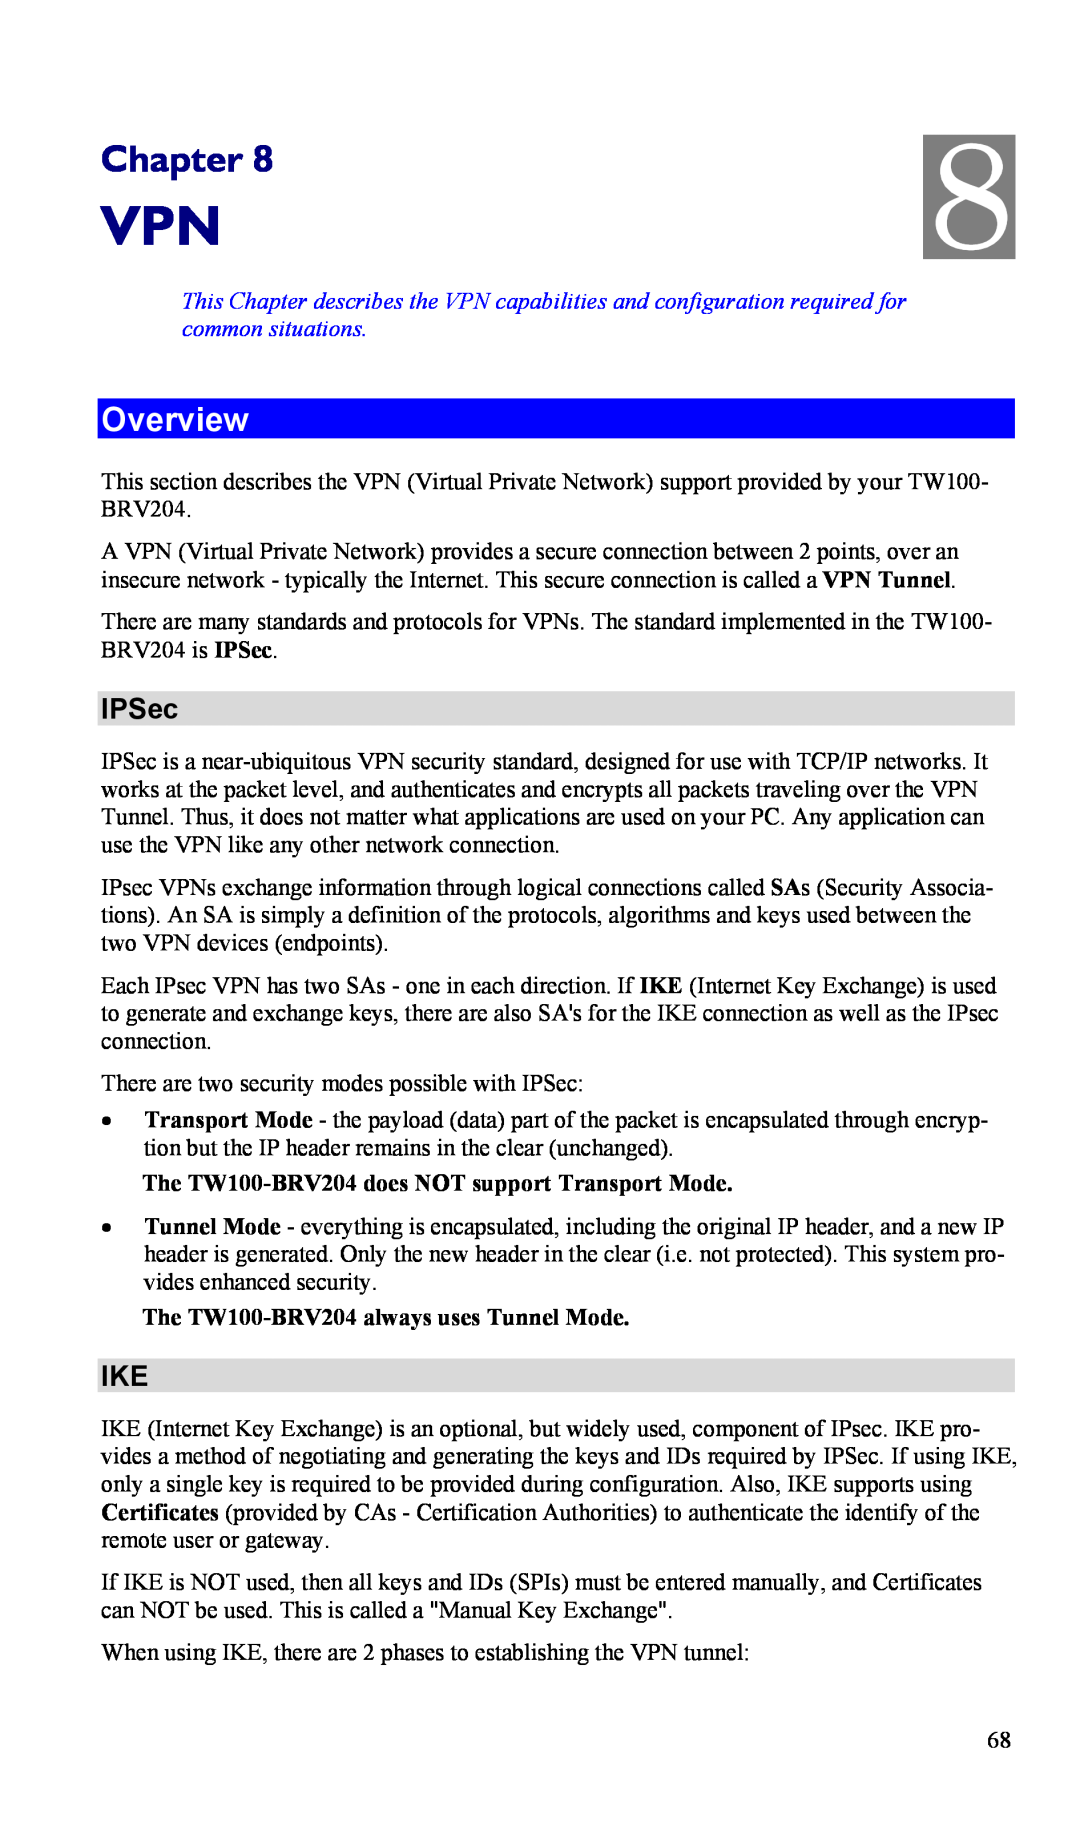 TRENDnet VPN Firewall Router, TW100-BRV204 manual IPSec, Chapter, Overview 